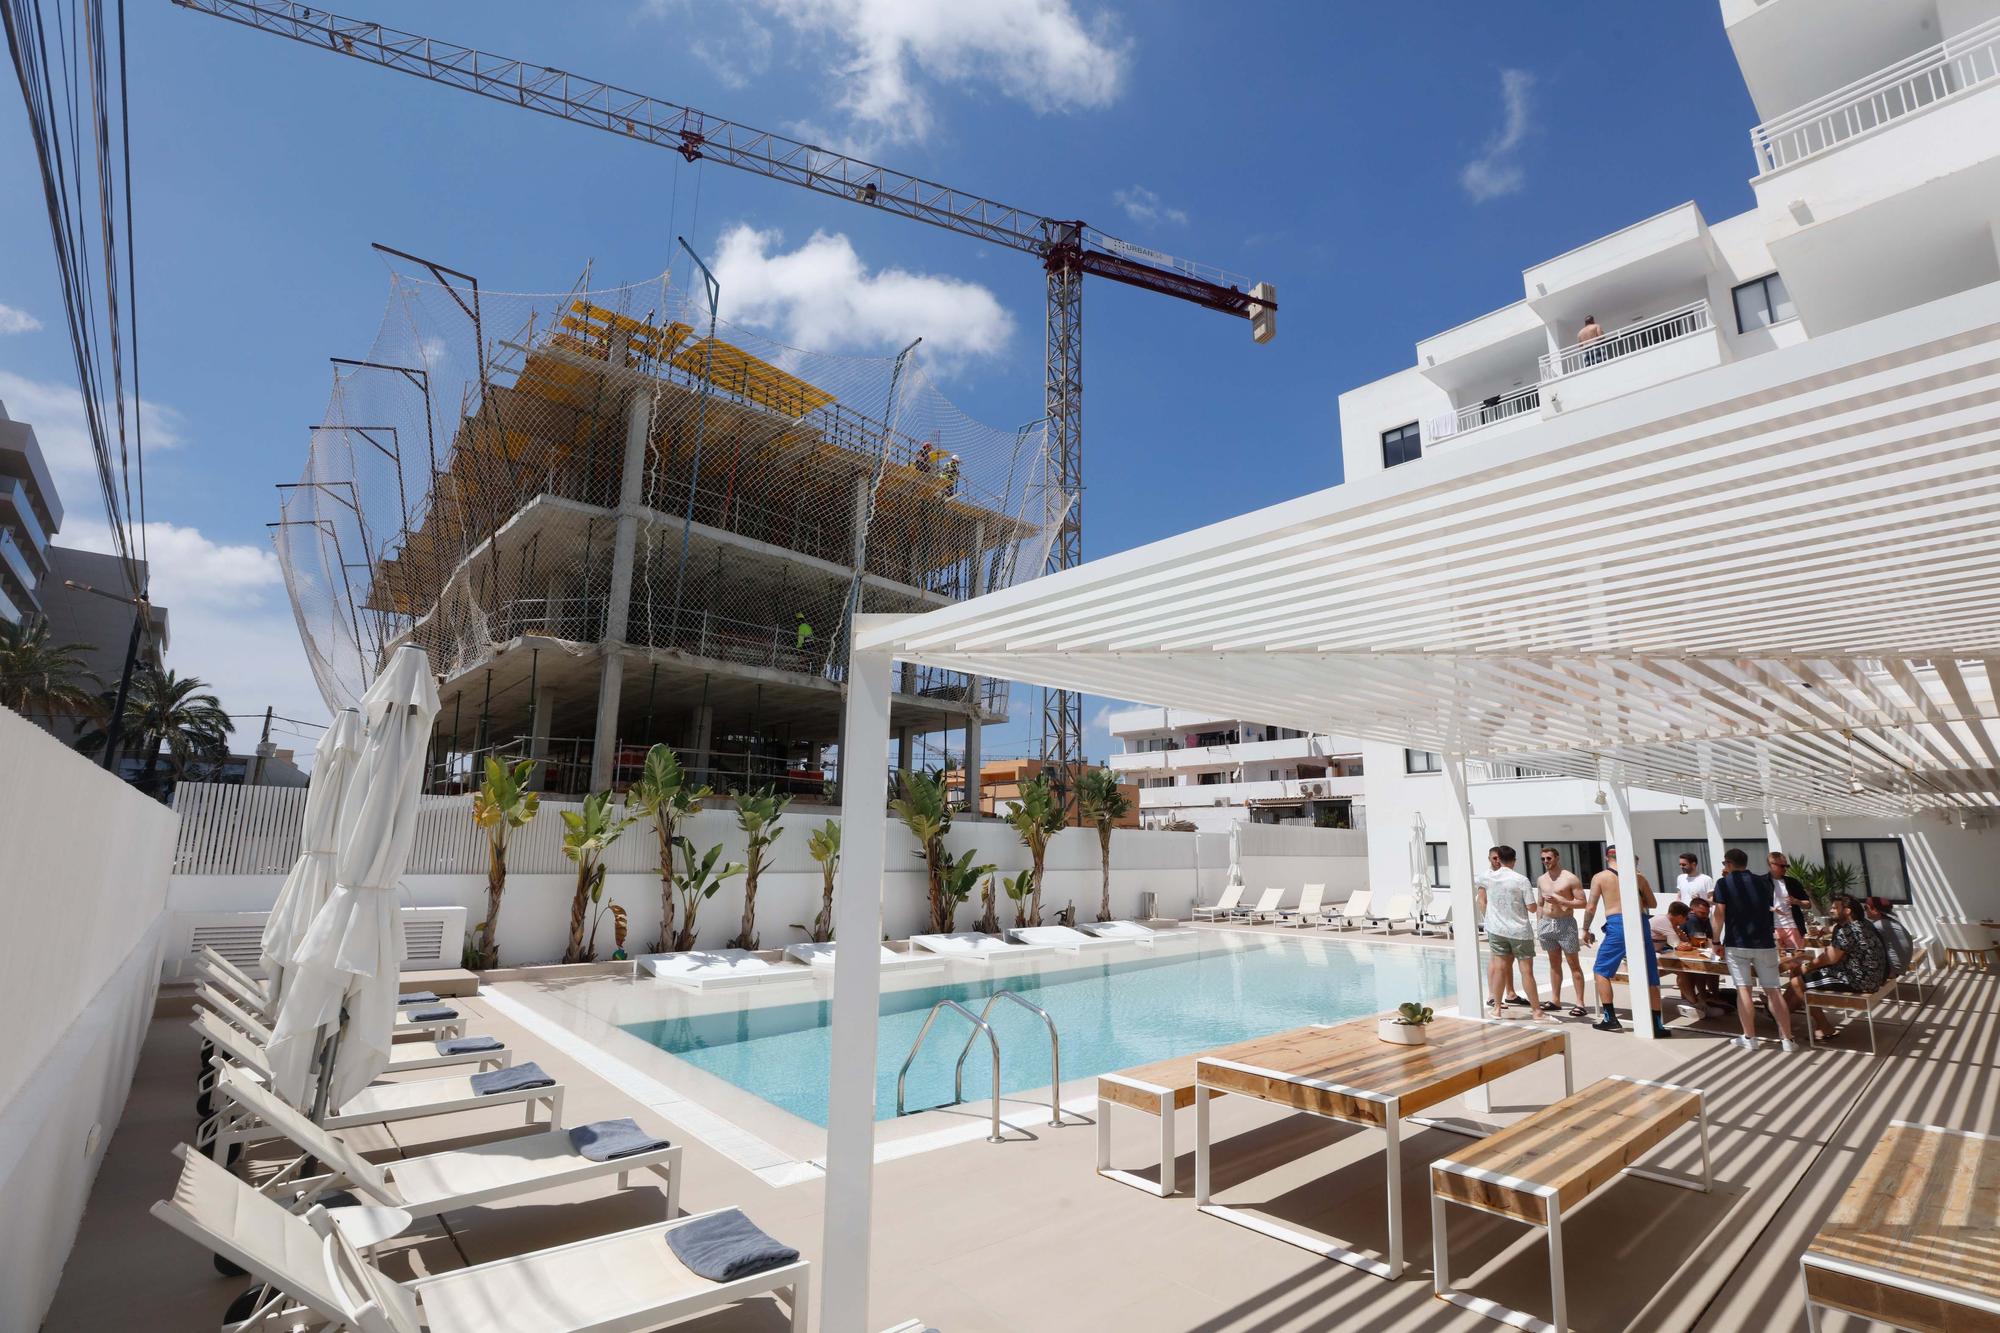 Un hotelero de Ibiza denuncia que está perdiendo clientes por las molestias de unas obras